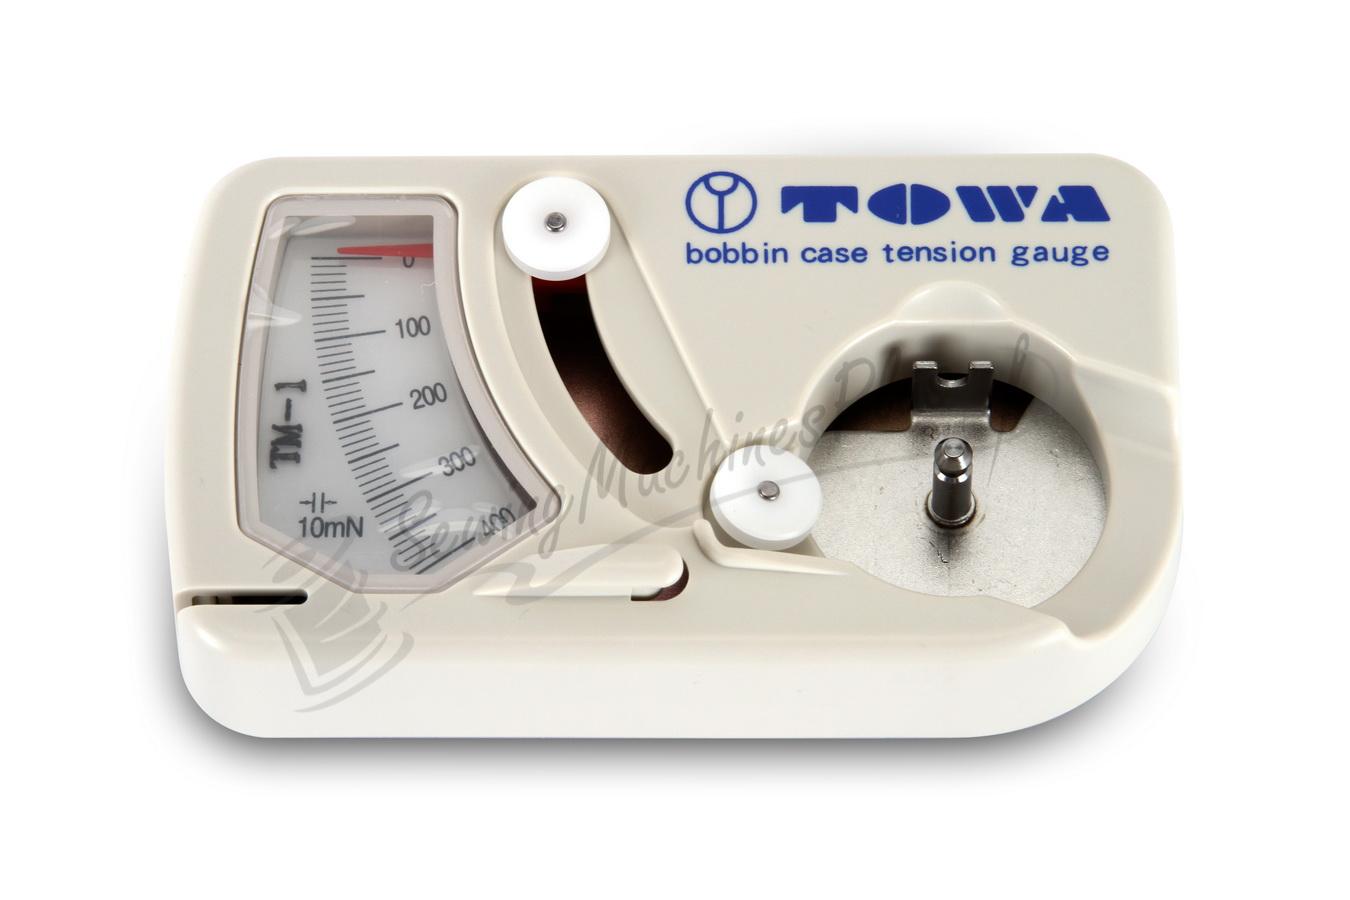 Towa Bobbin Case Tension Gauge TM-1 for "L" size bobbin cases